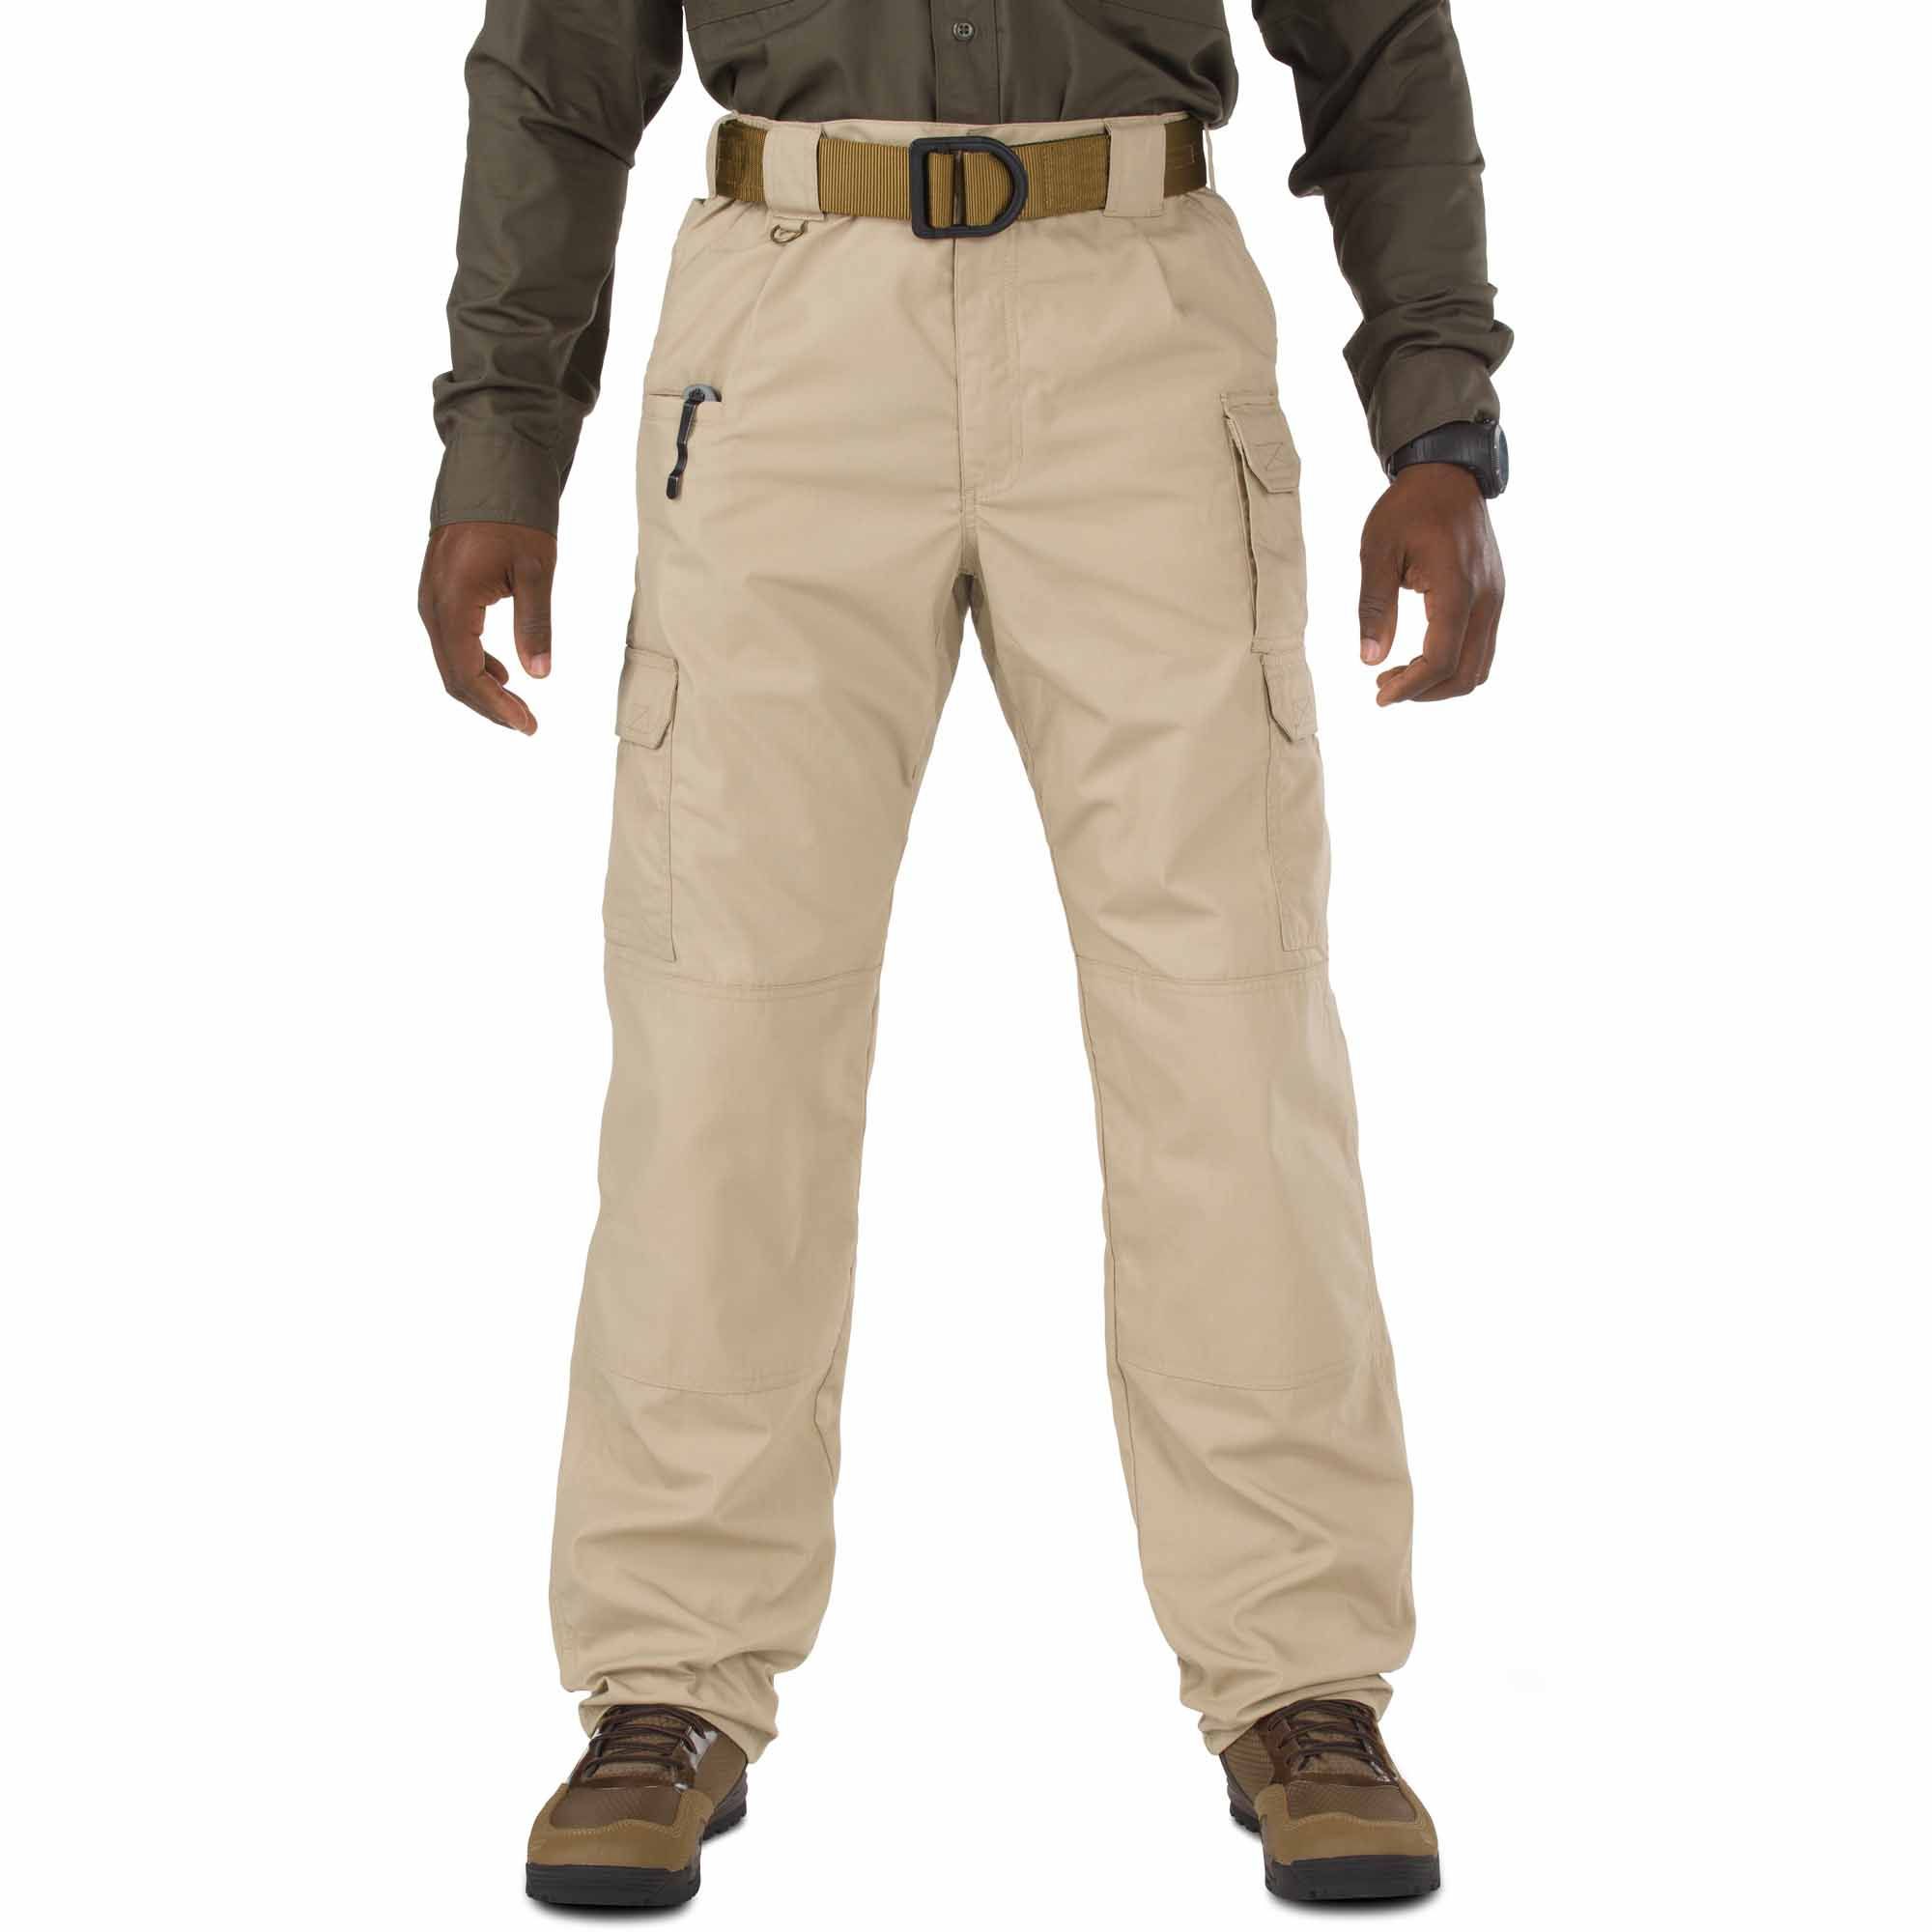 5.11 Tactical Taclite Pro Pants - Men's 